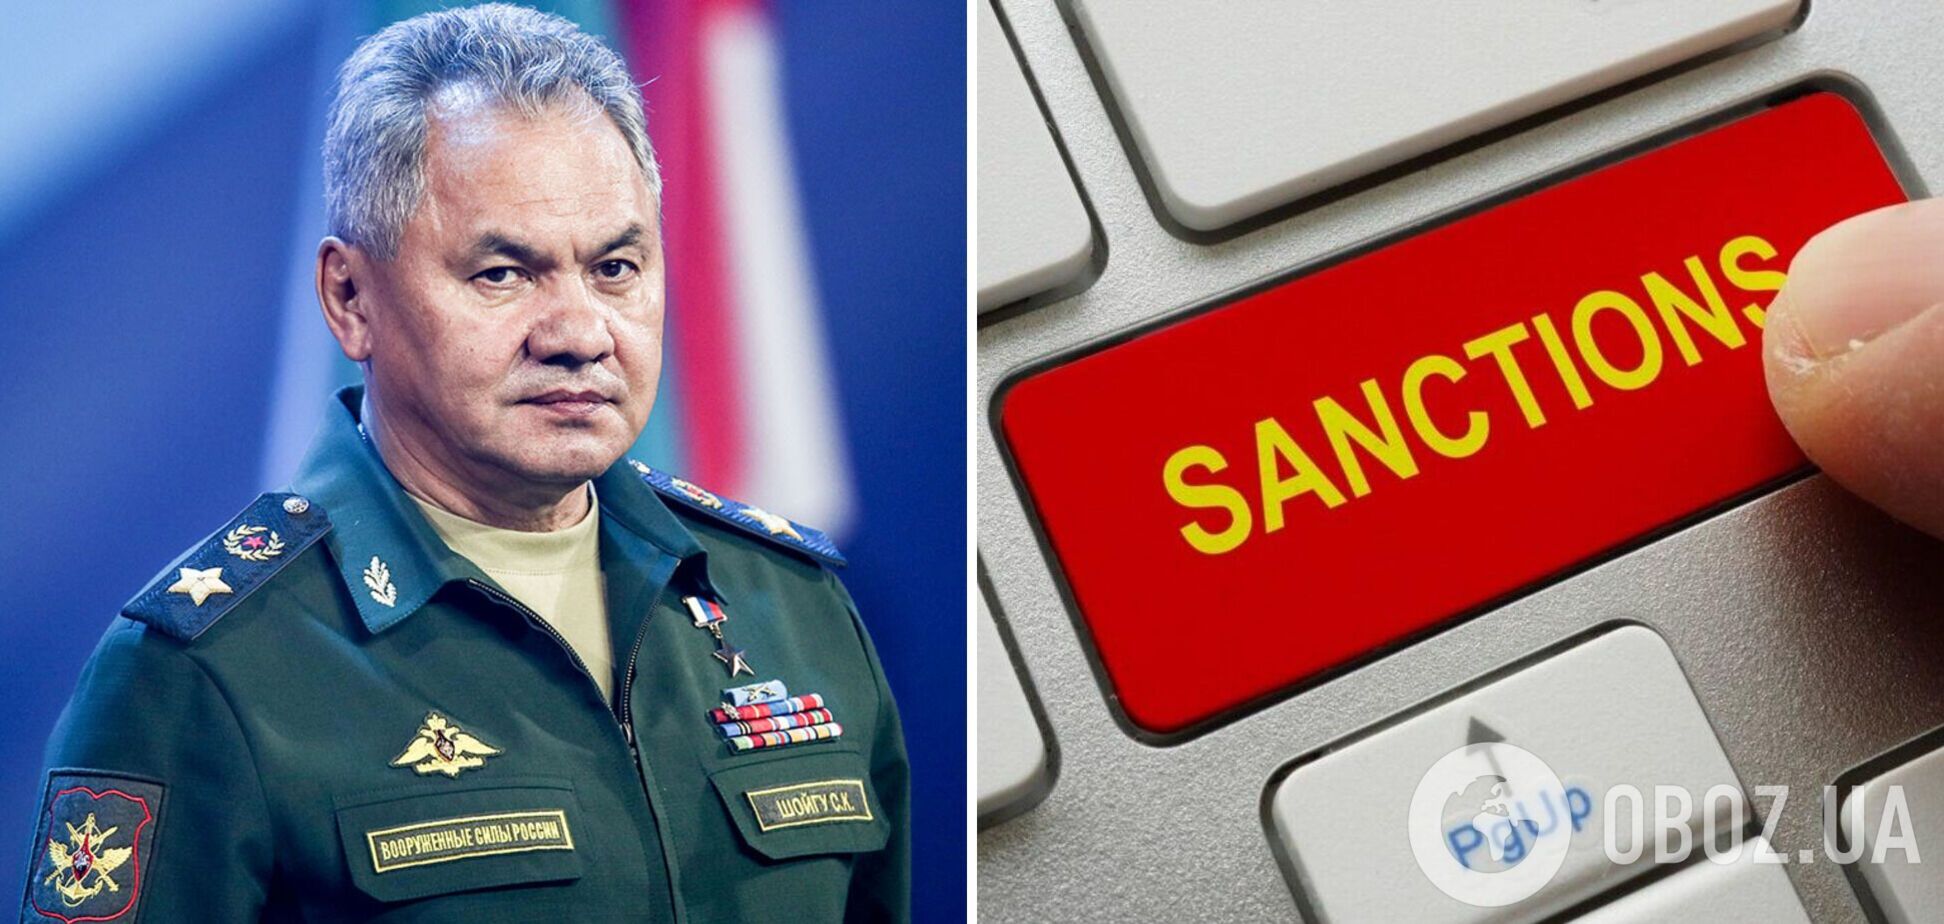 ЄС готує санкції проти міністра оборони Росії Шойгу: з'явилися подробиці